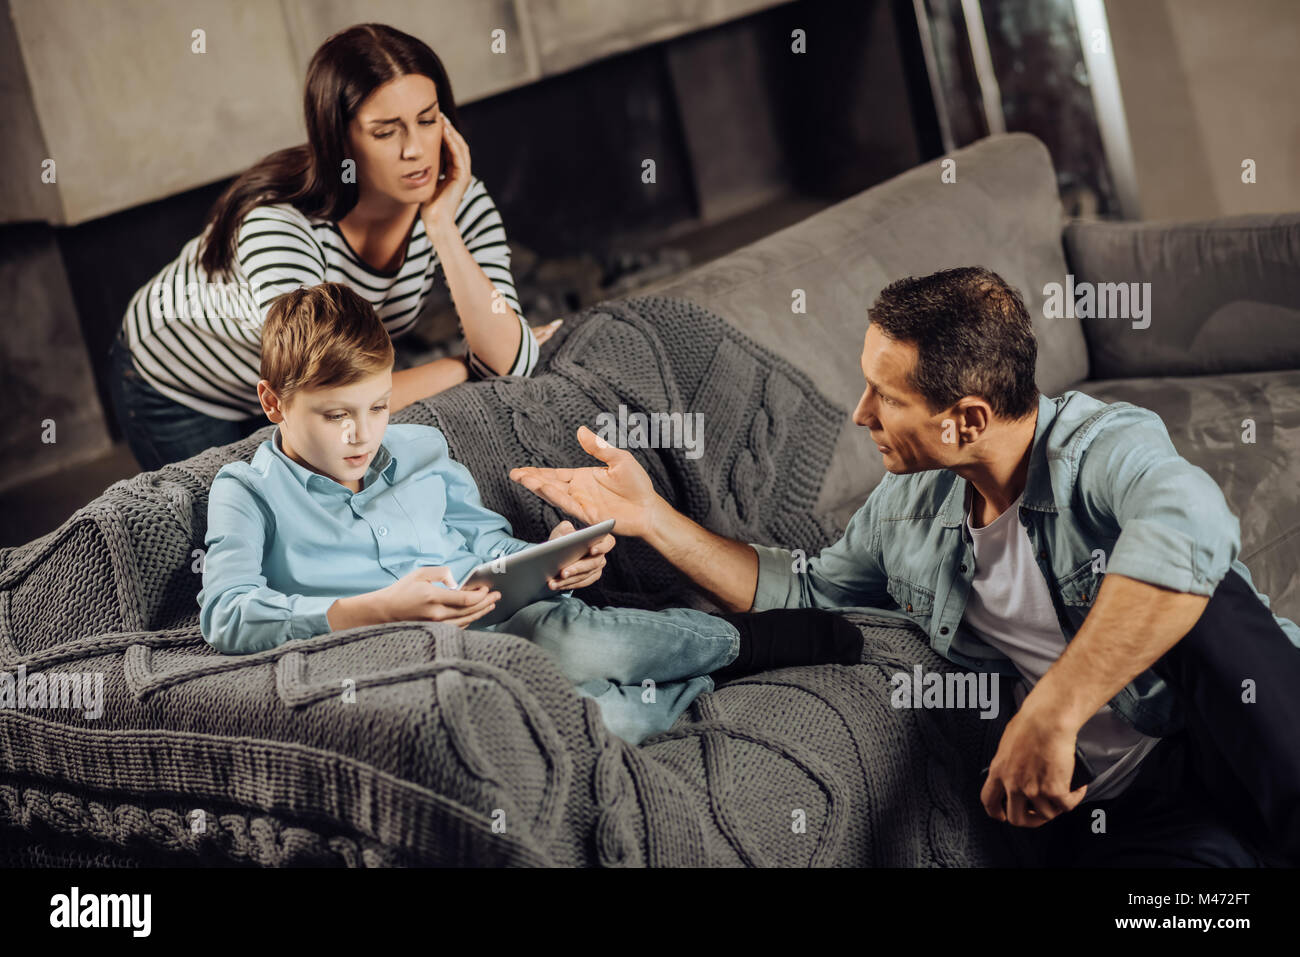 Hijo de padres interesados sermoneando sobre perjuicios de atracón-jugando Foto de stock